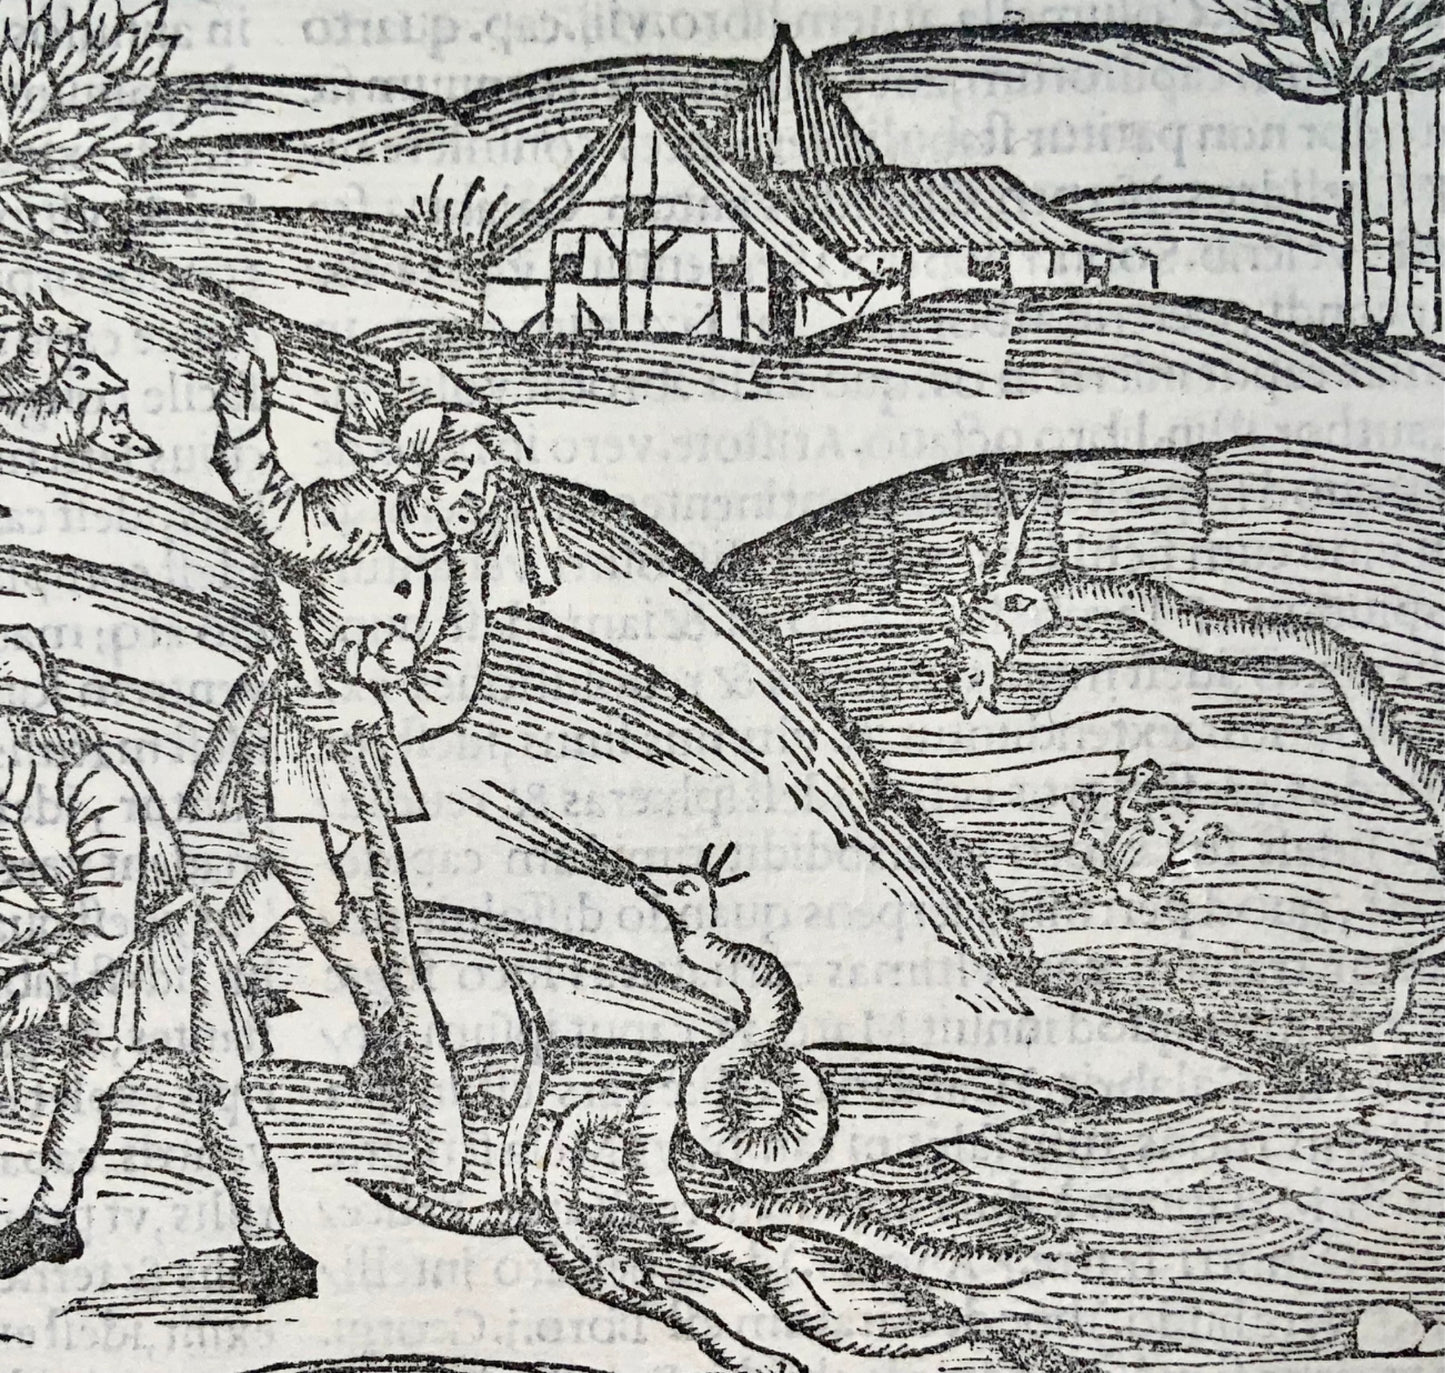 1502 Peste sous les traits de serpents, gravure sur bois incunable, Géorgiques de Virgile